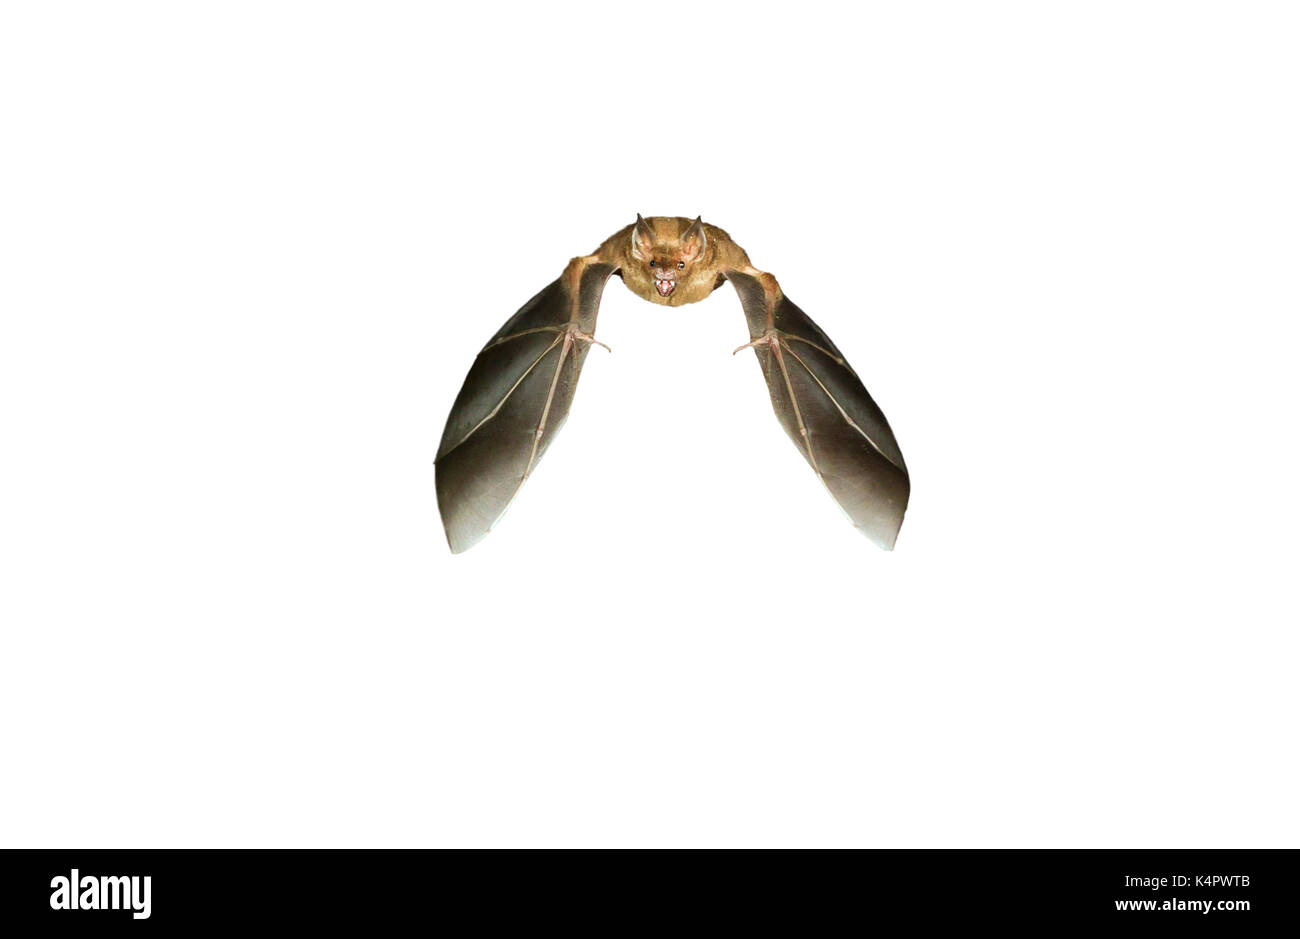 Seba’s short-tailed fruit bat (Carollia perspicillata) flying, isolated on white background. Stock Photo